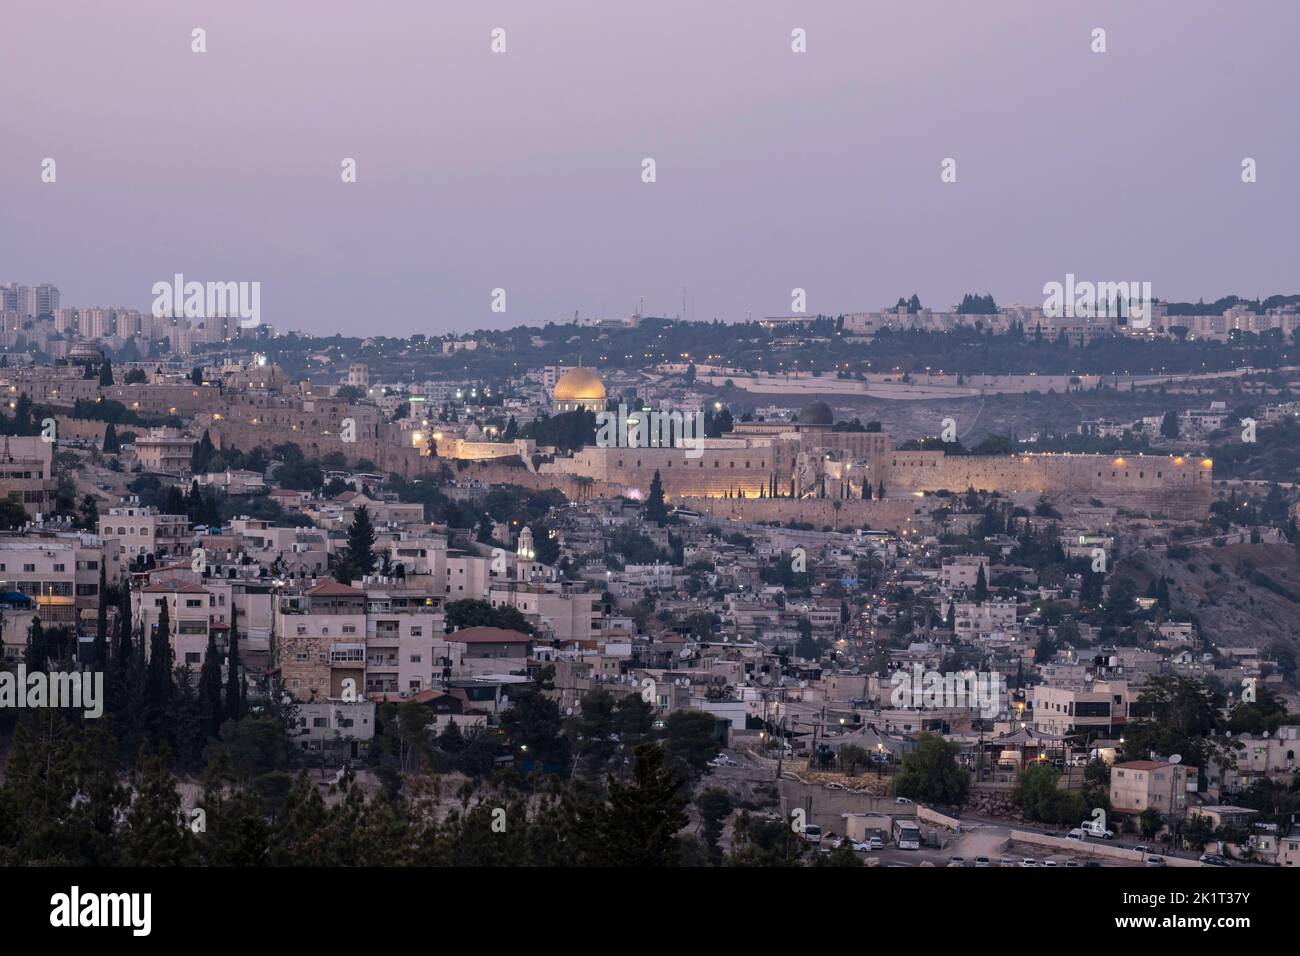 Vue au crépuscule du Dôme du Rocher et de la Mosquée Al-Aksa construite au sommet du Mont du Temple, connue sous le nom de la Compounde Al Aqsa ou Haram esh-Sharif dans le quartier palestinien de Silwan, à Jérusalem-est, en Israël Banque D'Images